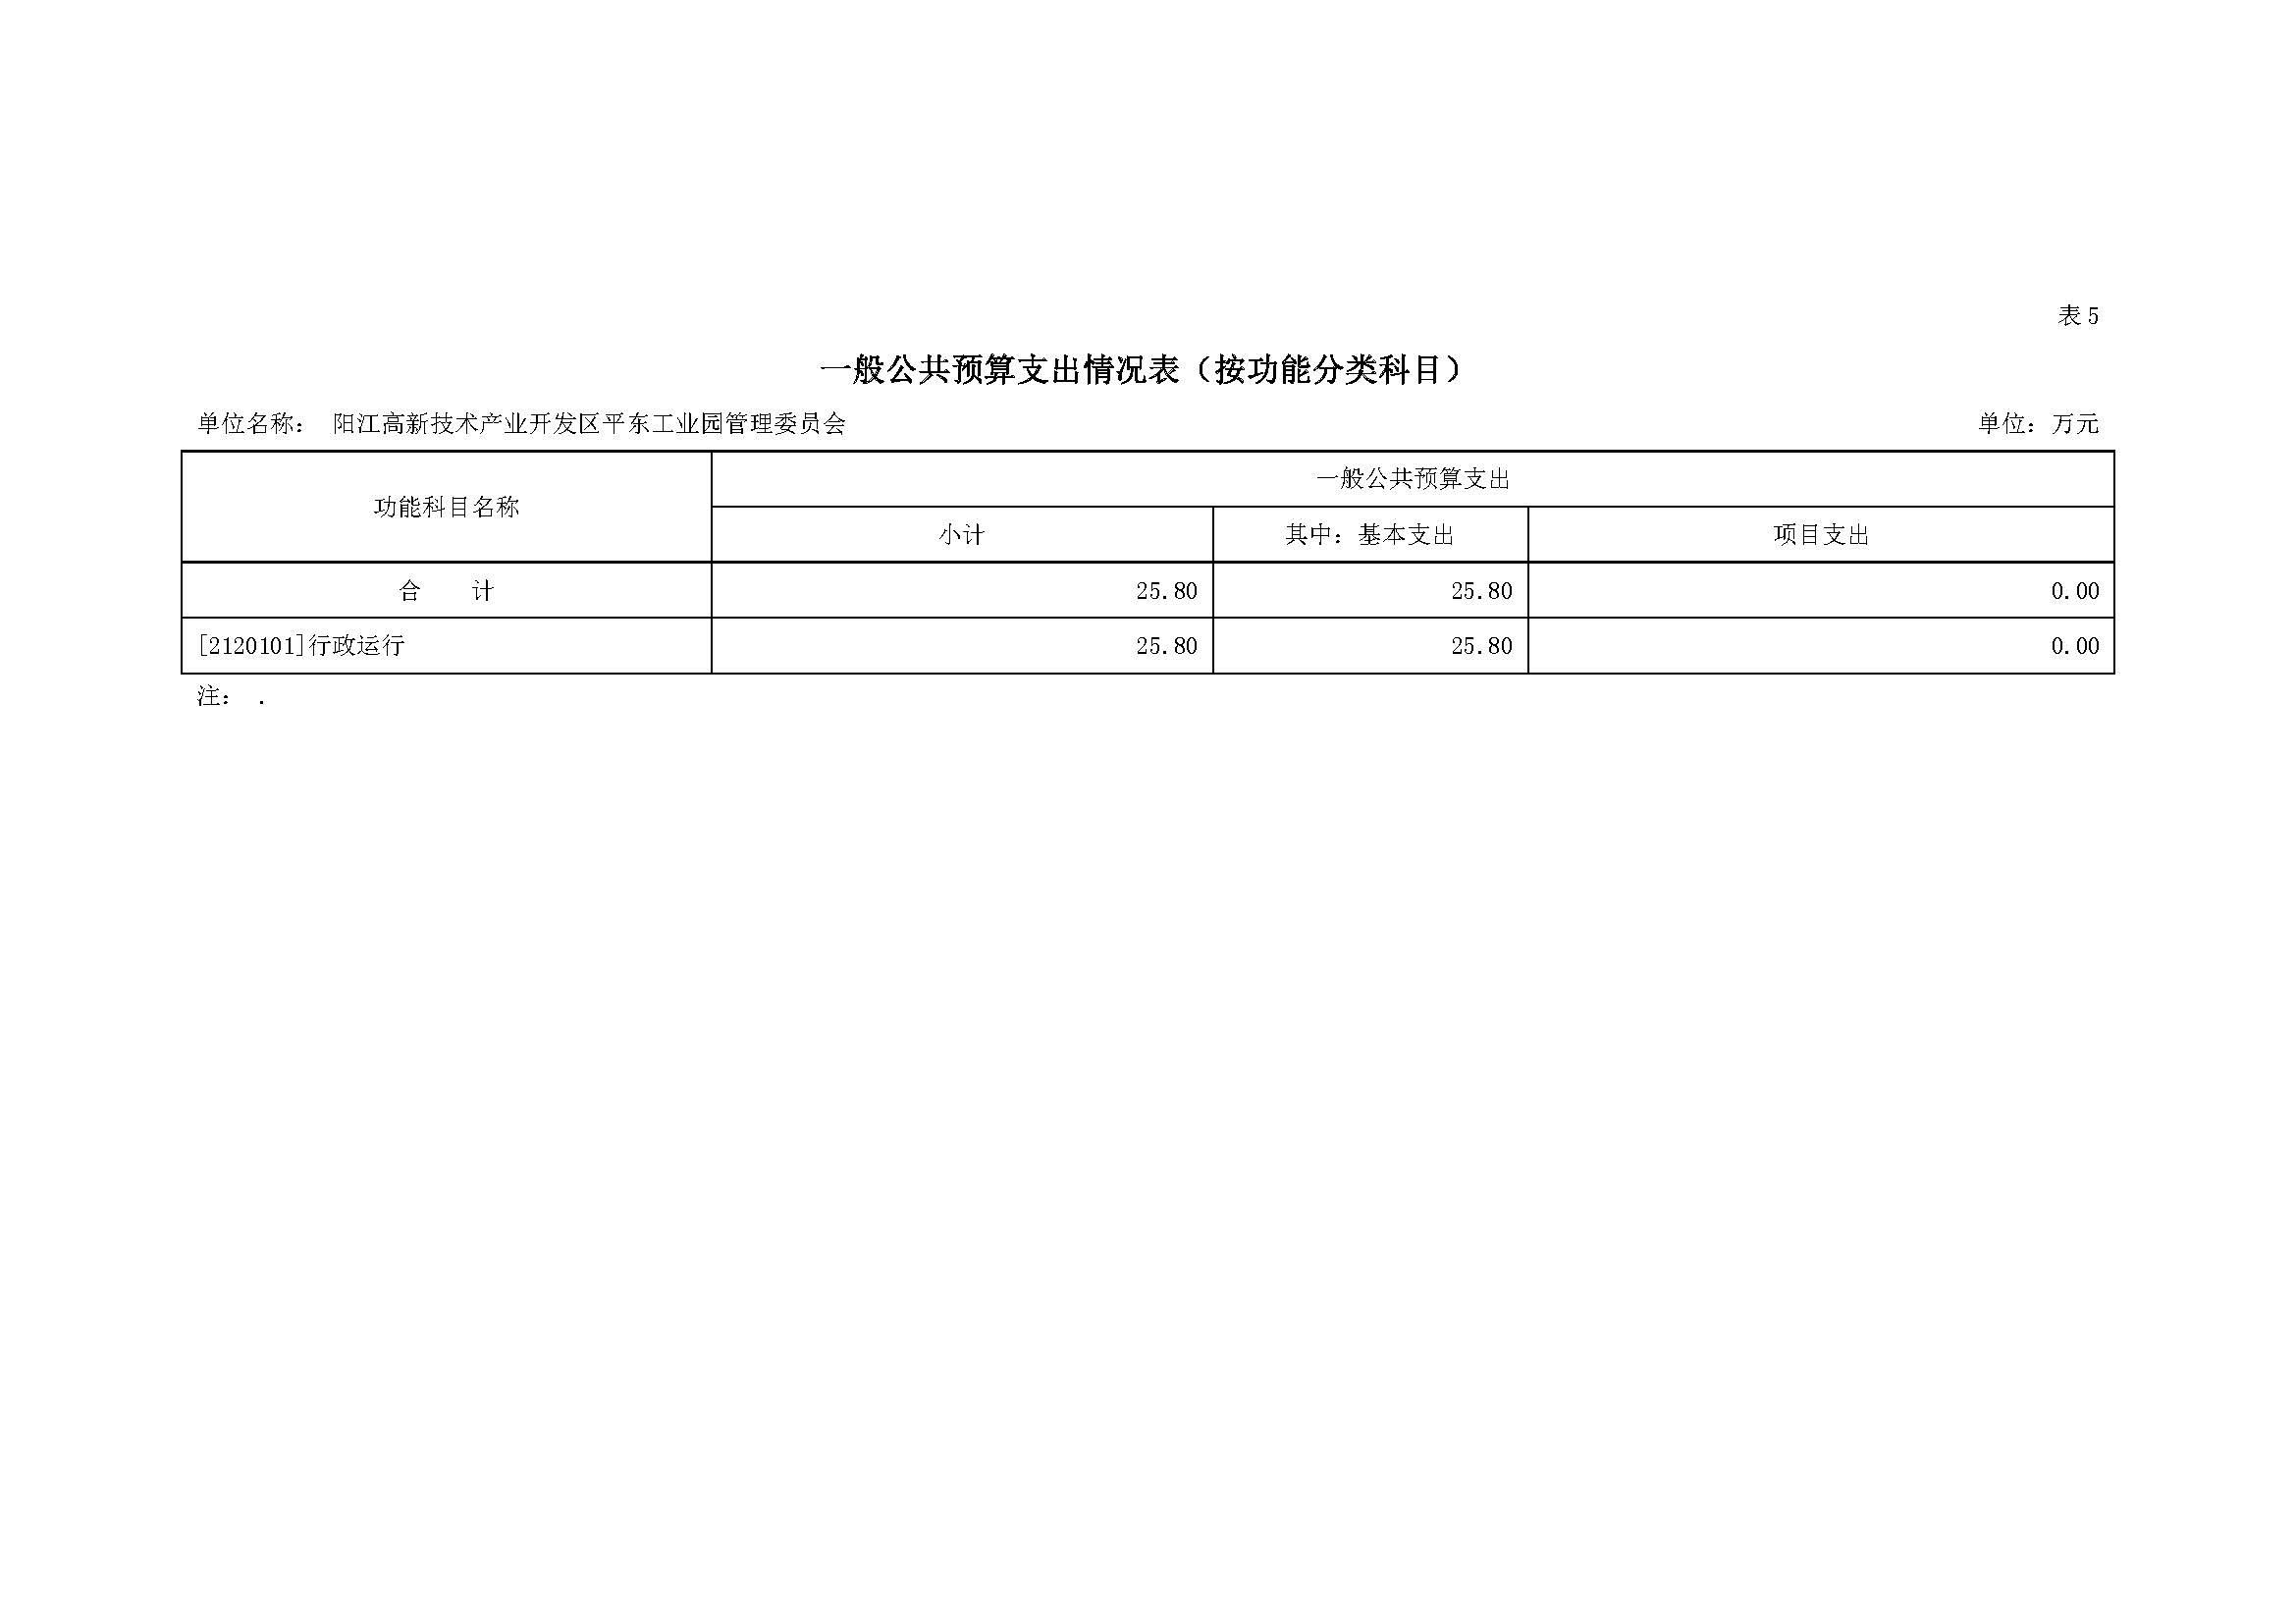 2021 年阳江高新技术产业开发区管理委员会平东工业园部门预算_页面_11.jpg